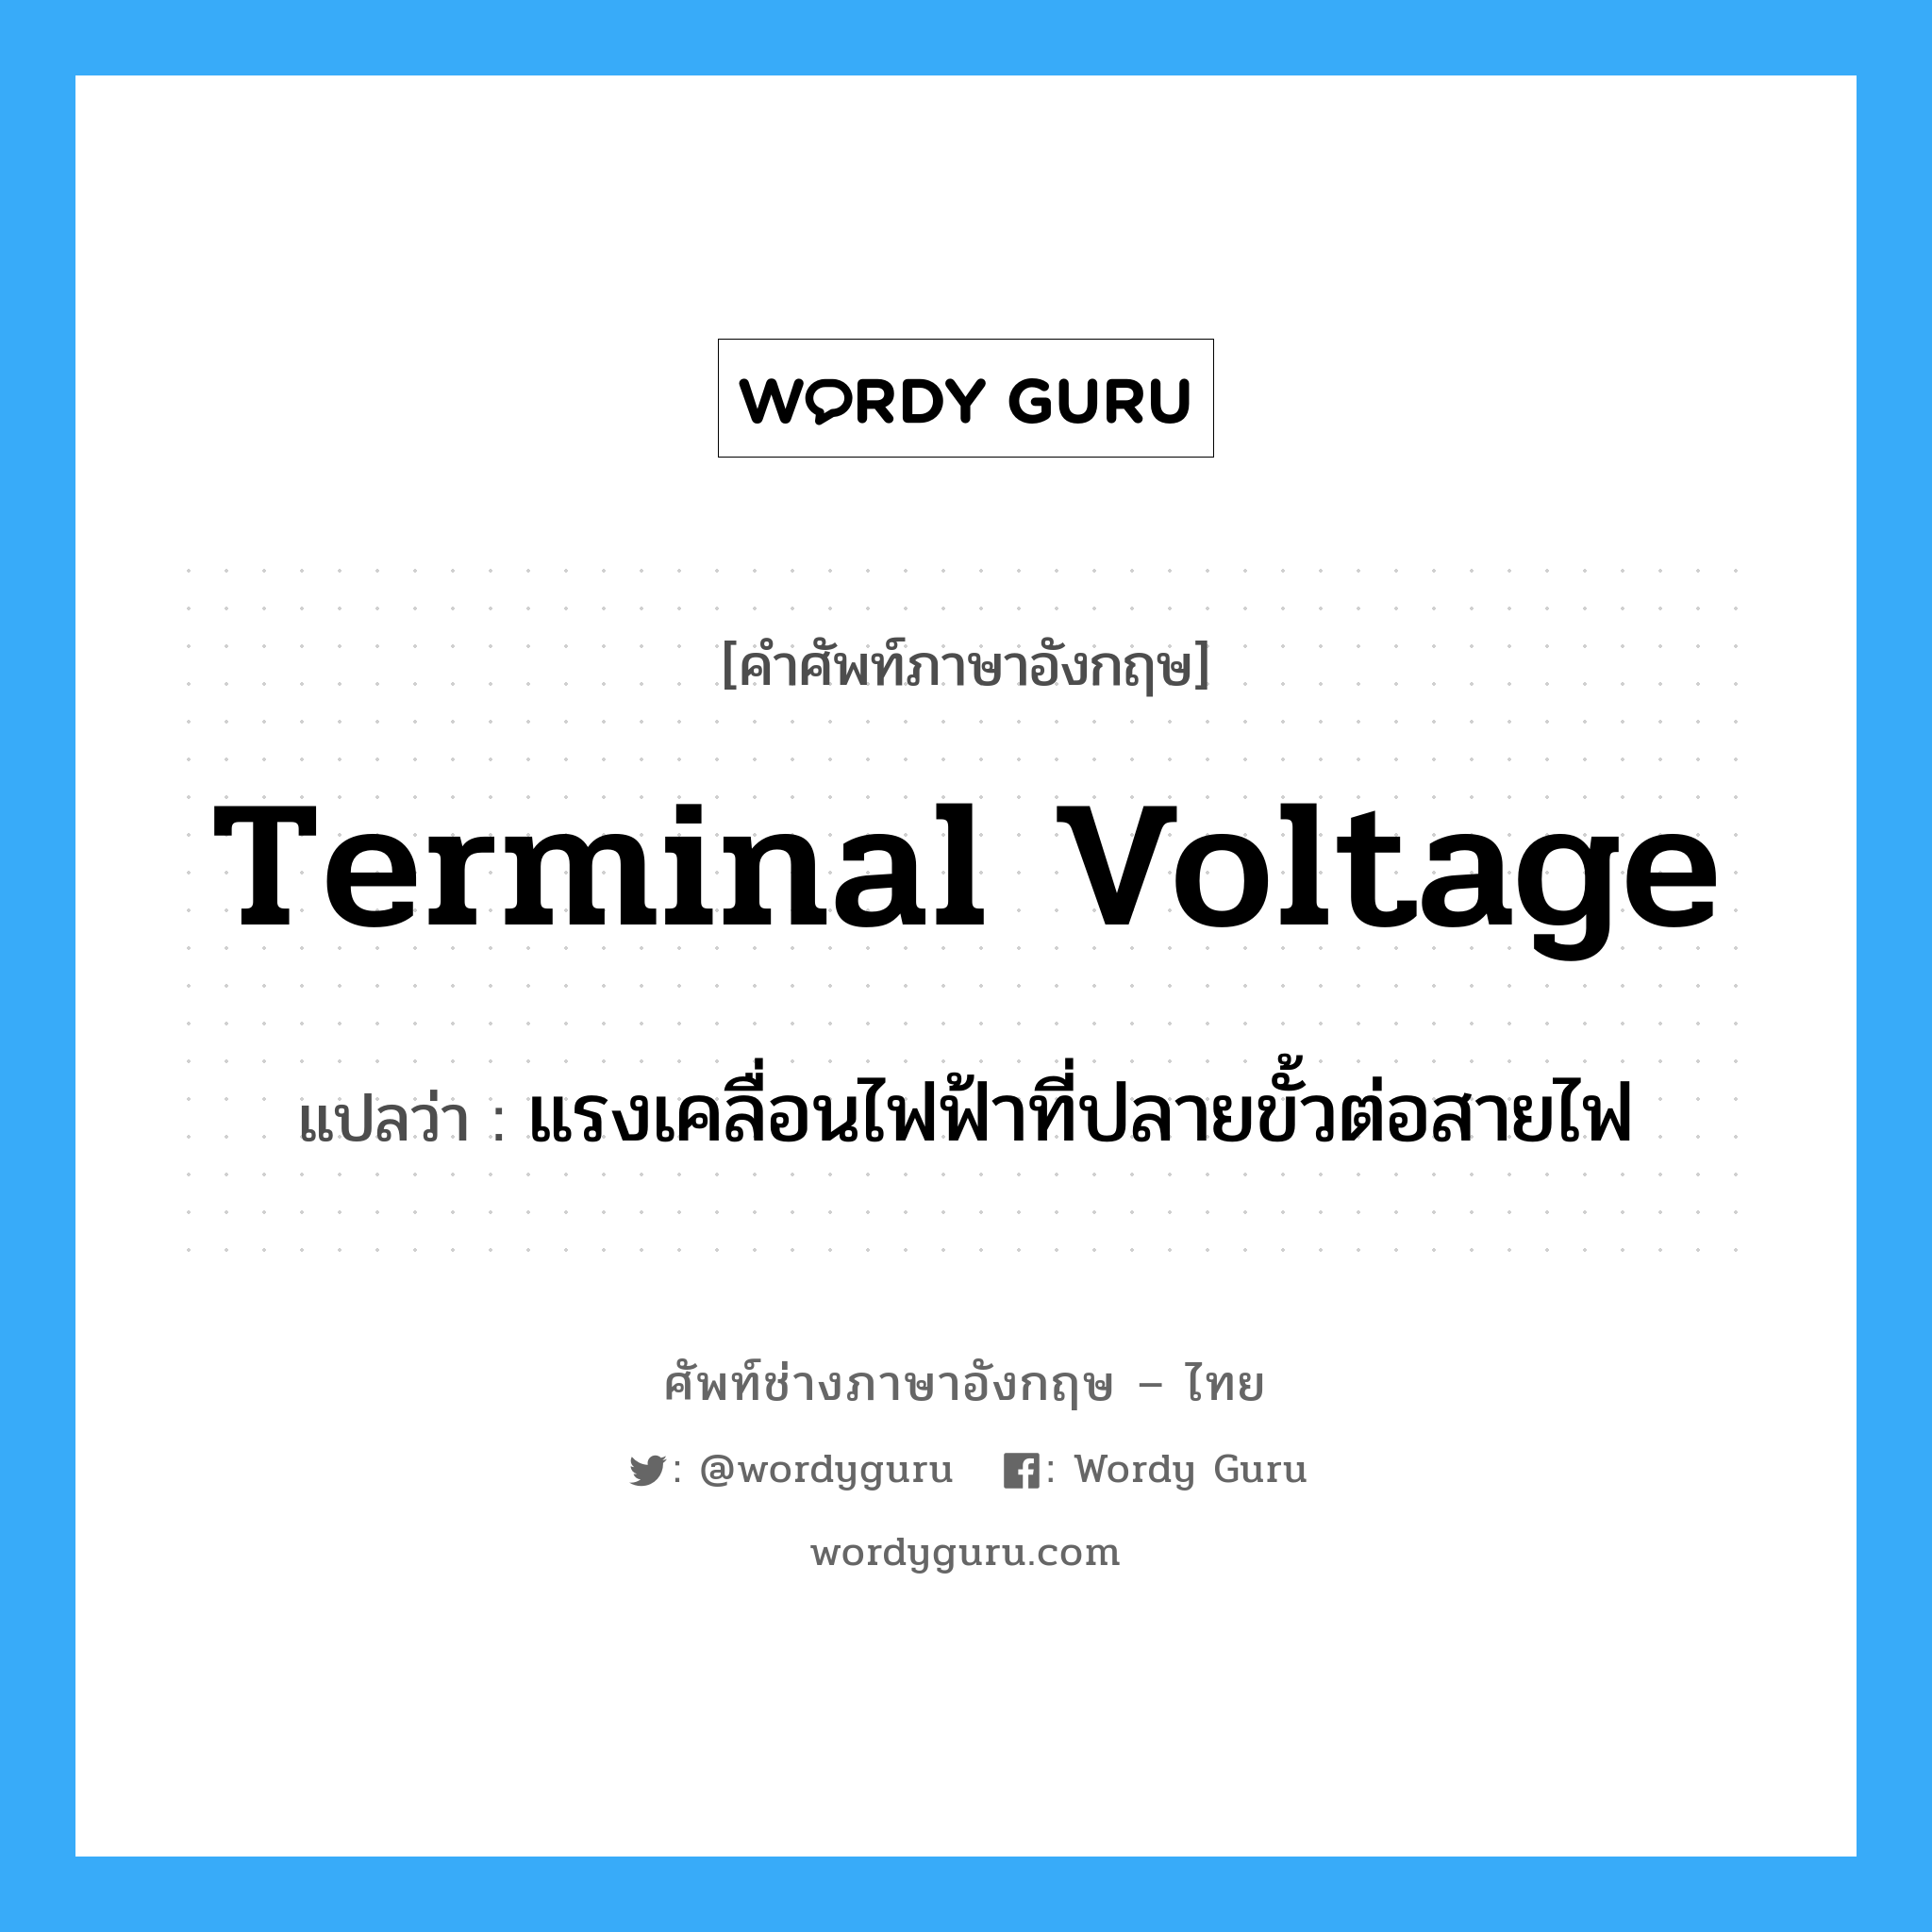 terminal voltage แปลว่า?, คำศัพท์ช่างภาษาอังกฤษ - ไทย terminal voltage คำศัพท์ภาษาอังกฤษ terminal voltage แปลว่า แรงเคลื่อนไฟฟ้าที่ปลายขั้วต่อสายไฟ